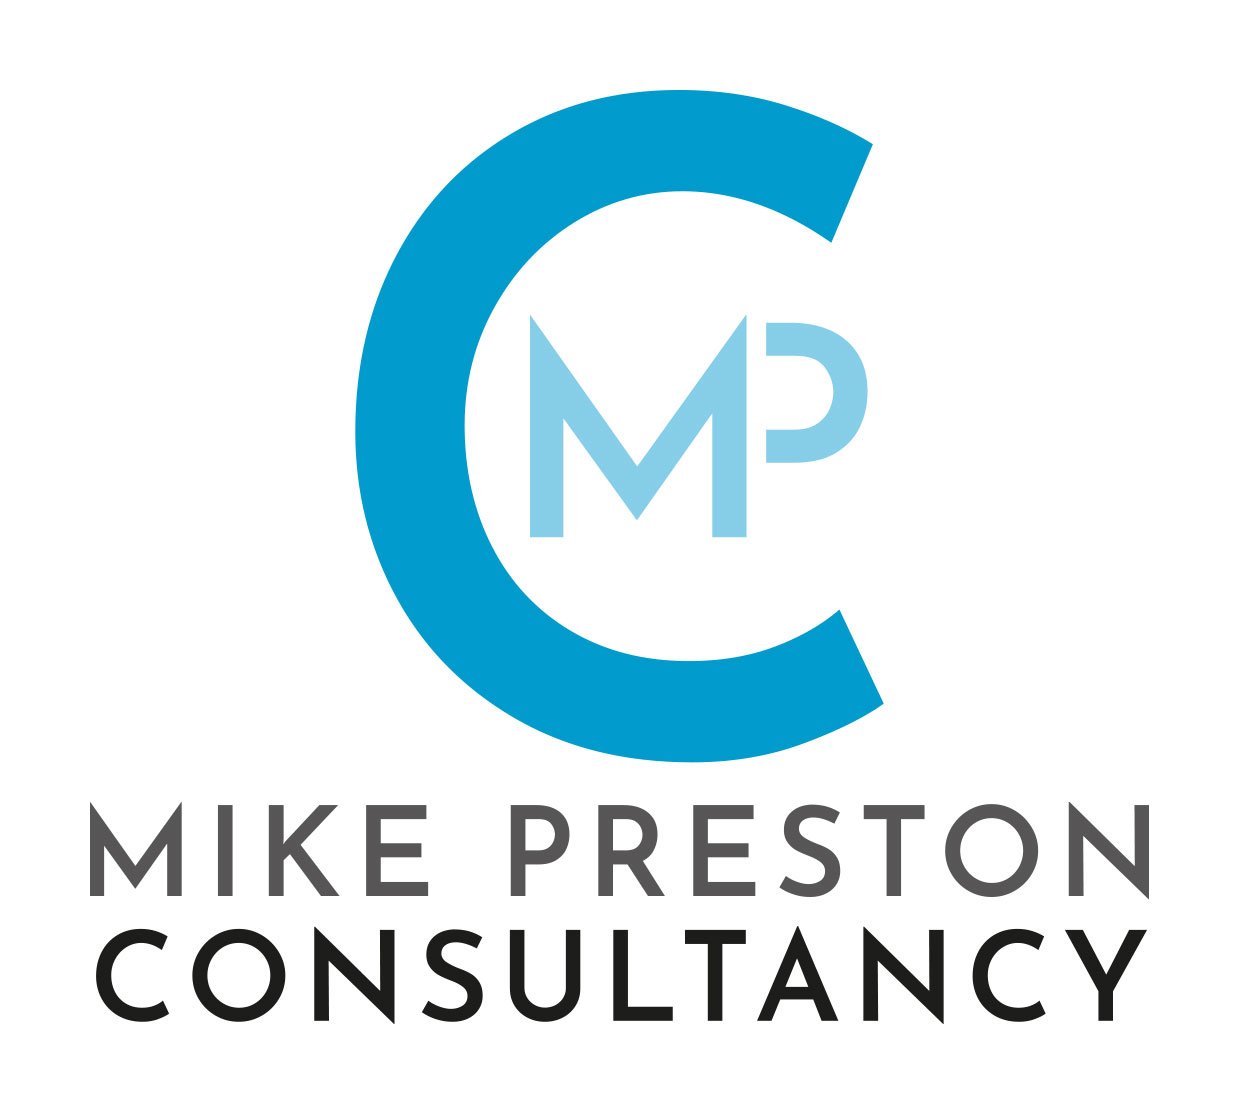 Mike Preston Consultancy